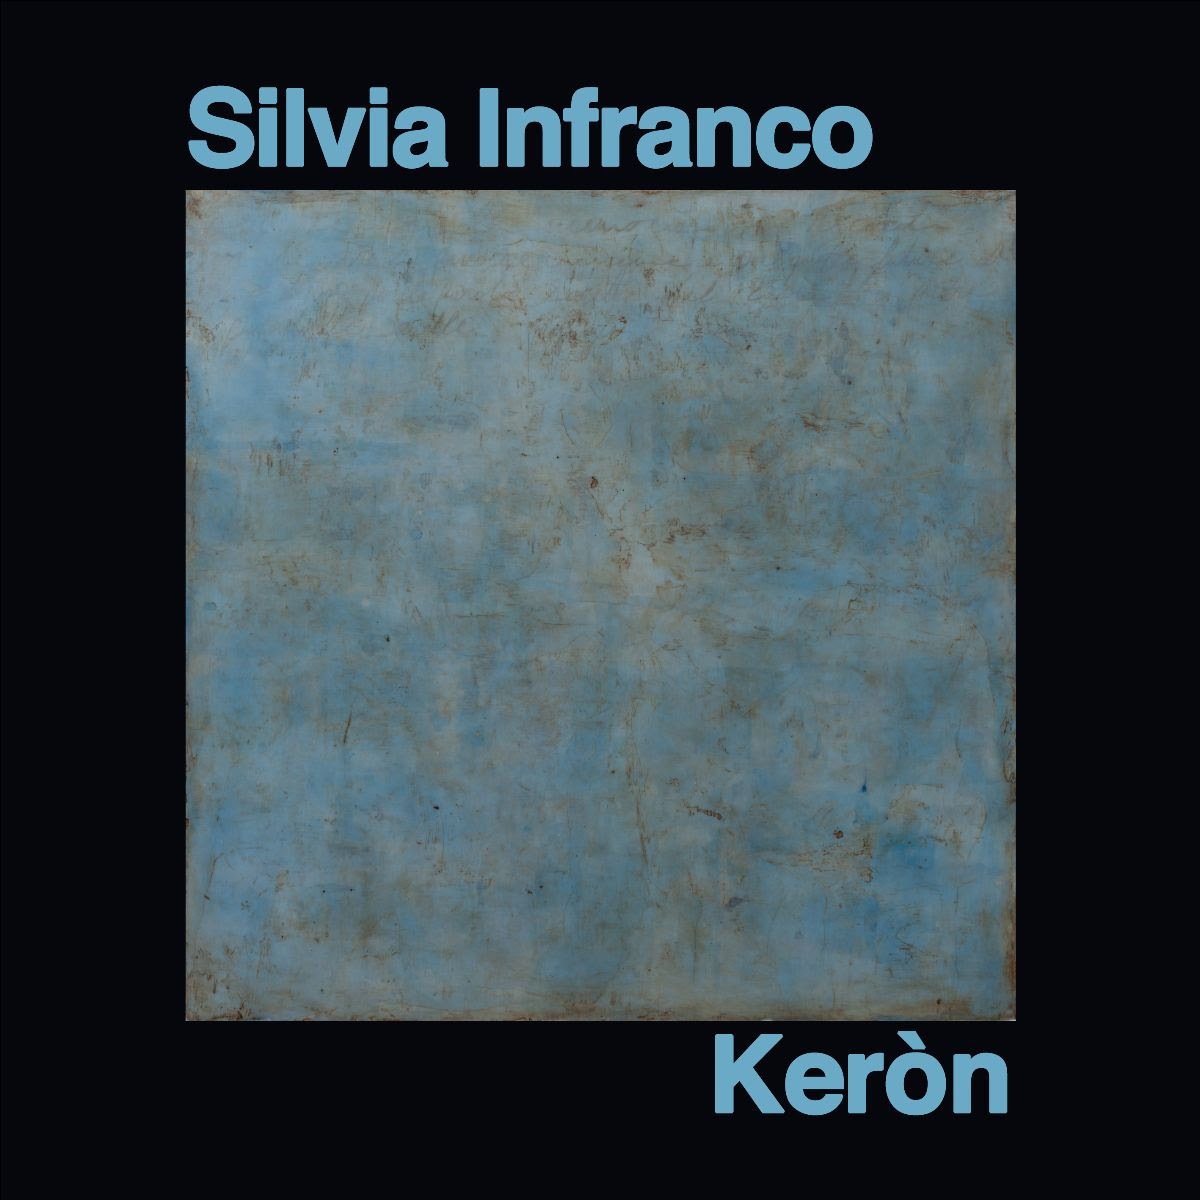 Silvia Infranco - Keròn